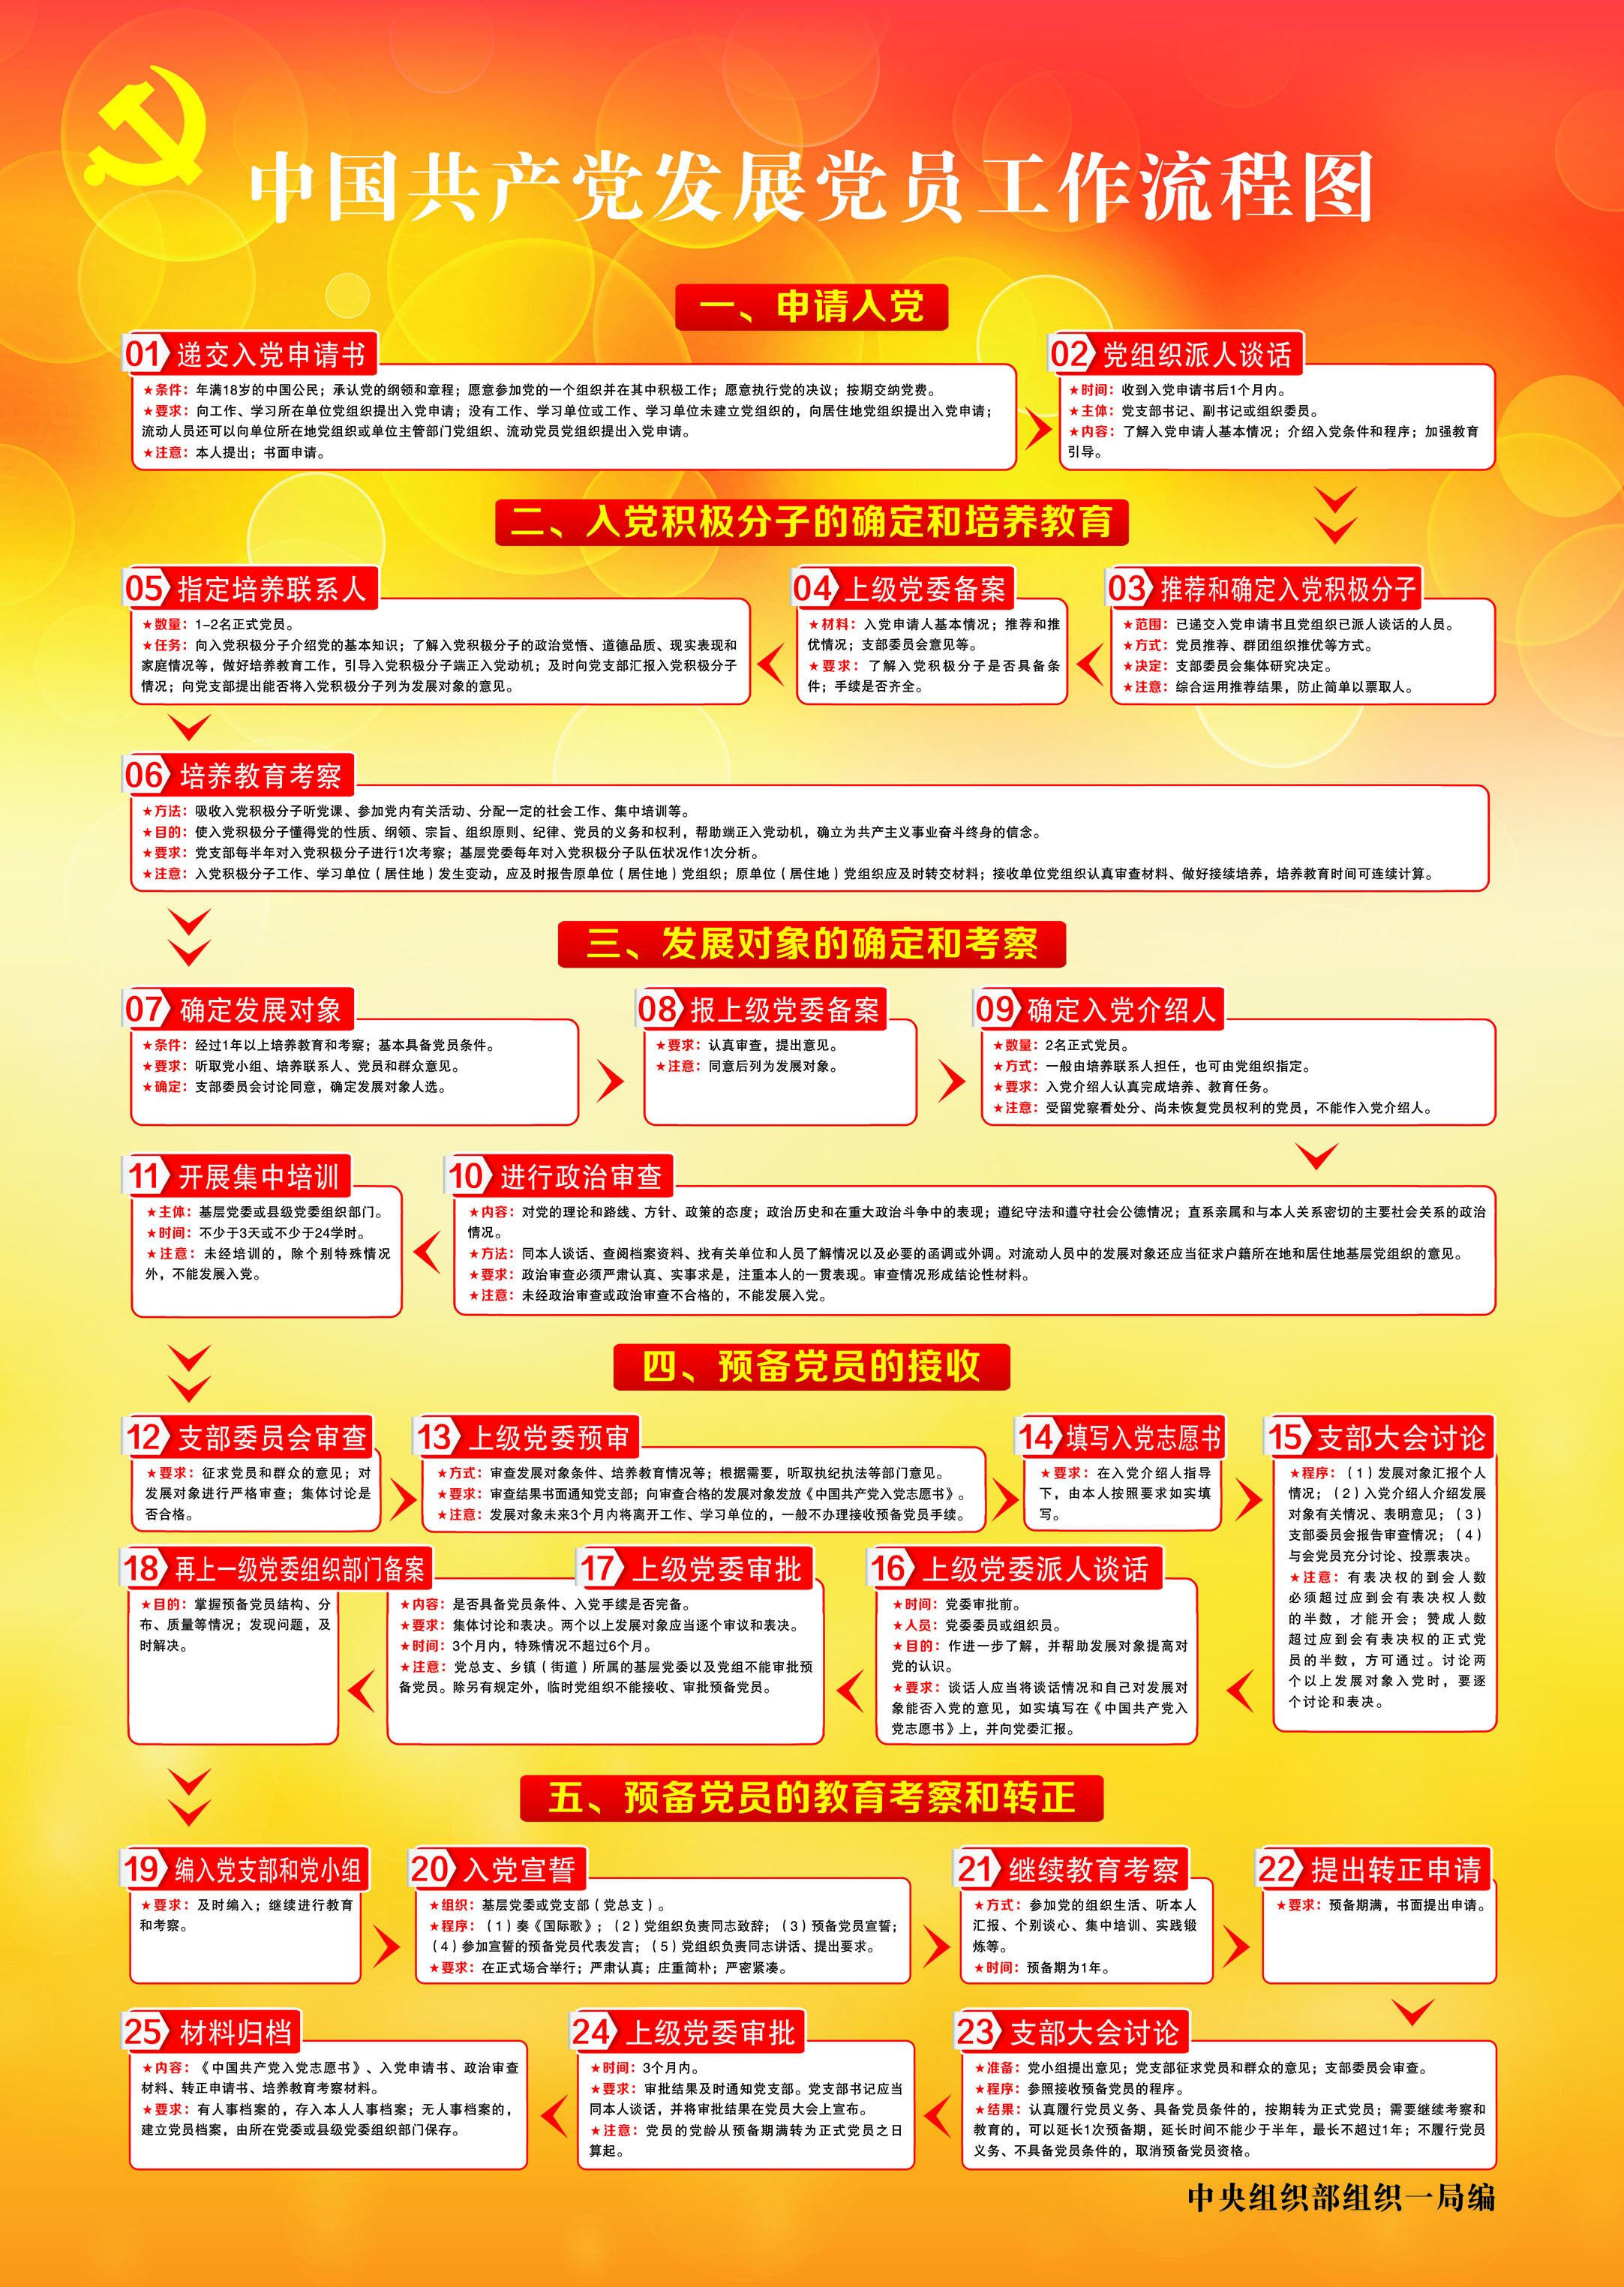 中国共产党发展党员的工作流程图.jpg